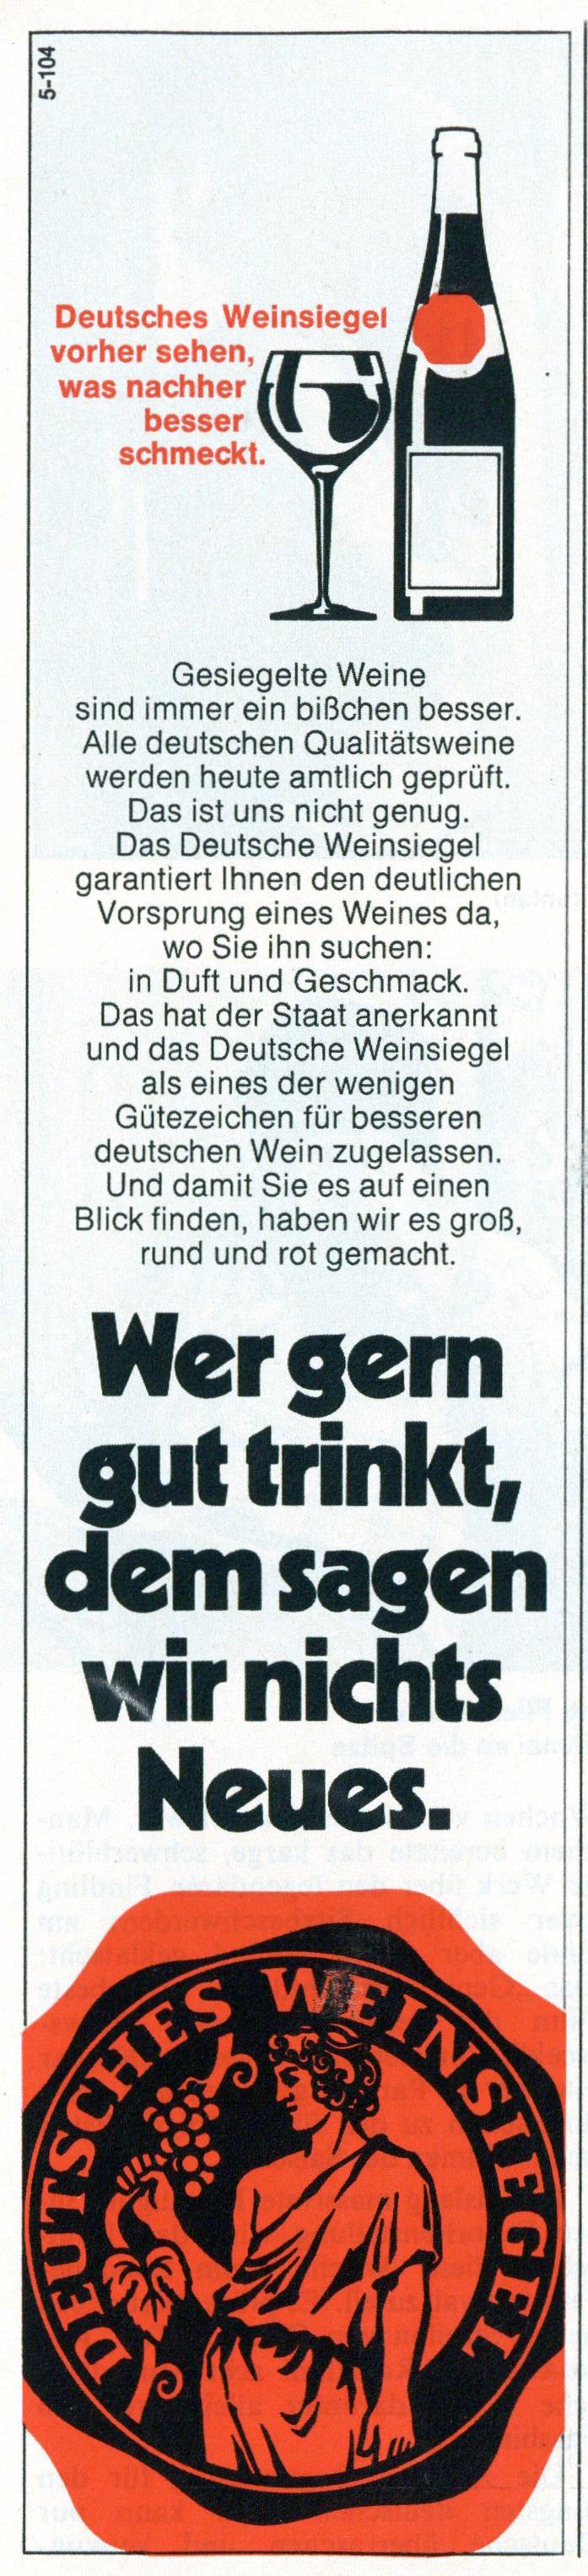 Deutsches Weinsiegel 1975 0.jpg